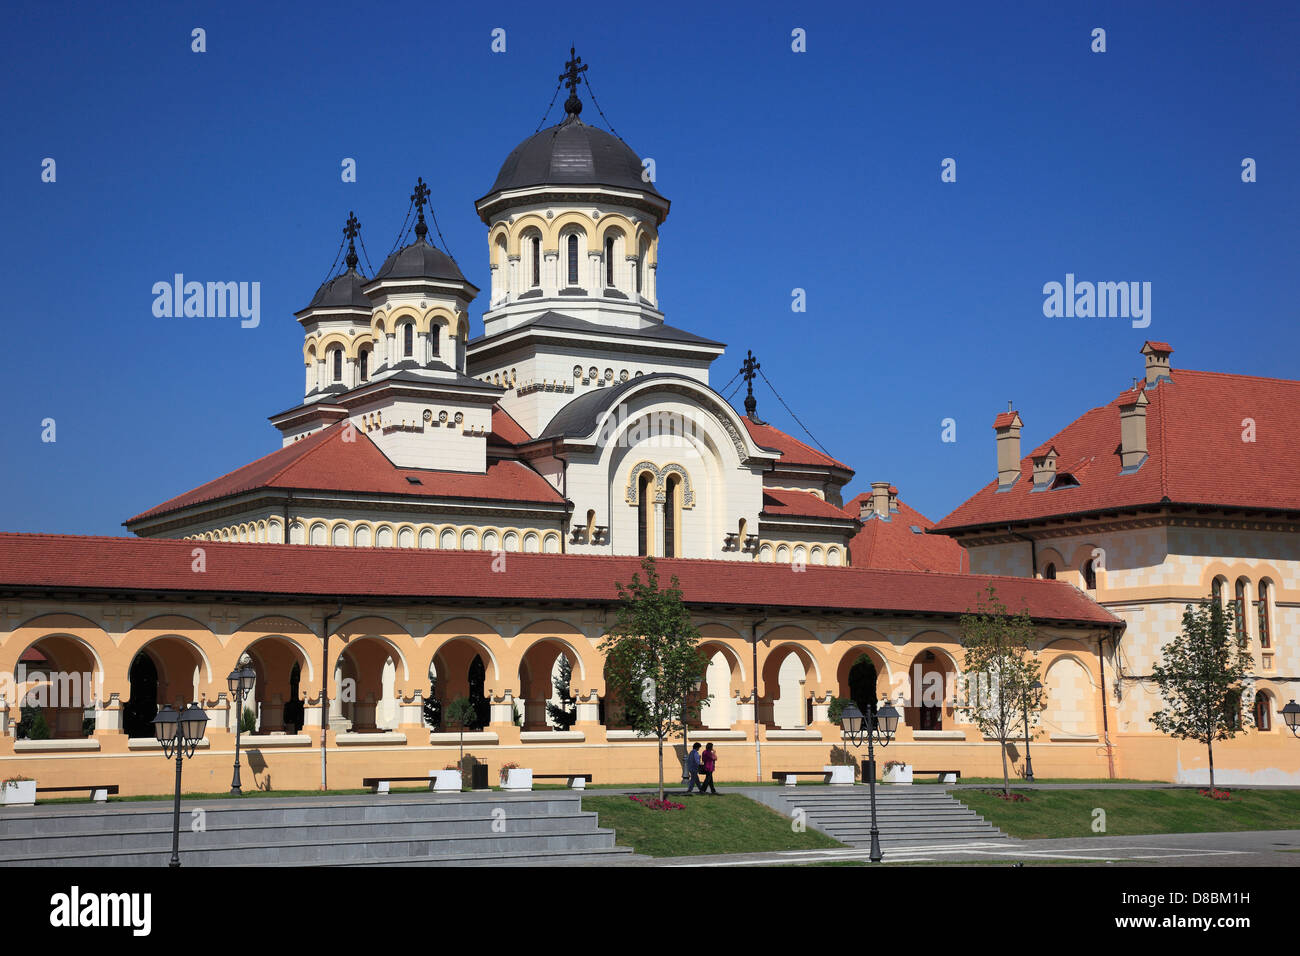 Incoronazione cattedrale della Chiesa Ortodossa Romena, Alba Iulia, Balgrad, Transilvania, Romania. Foto Stock